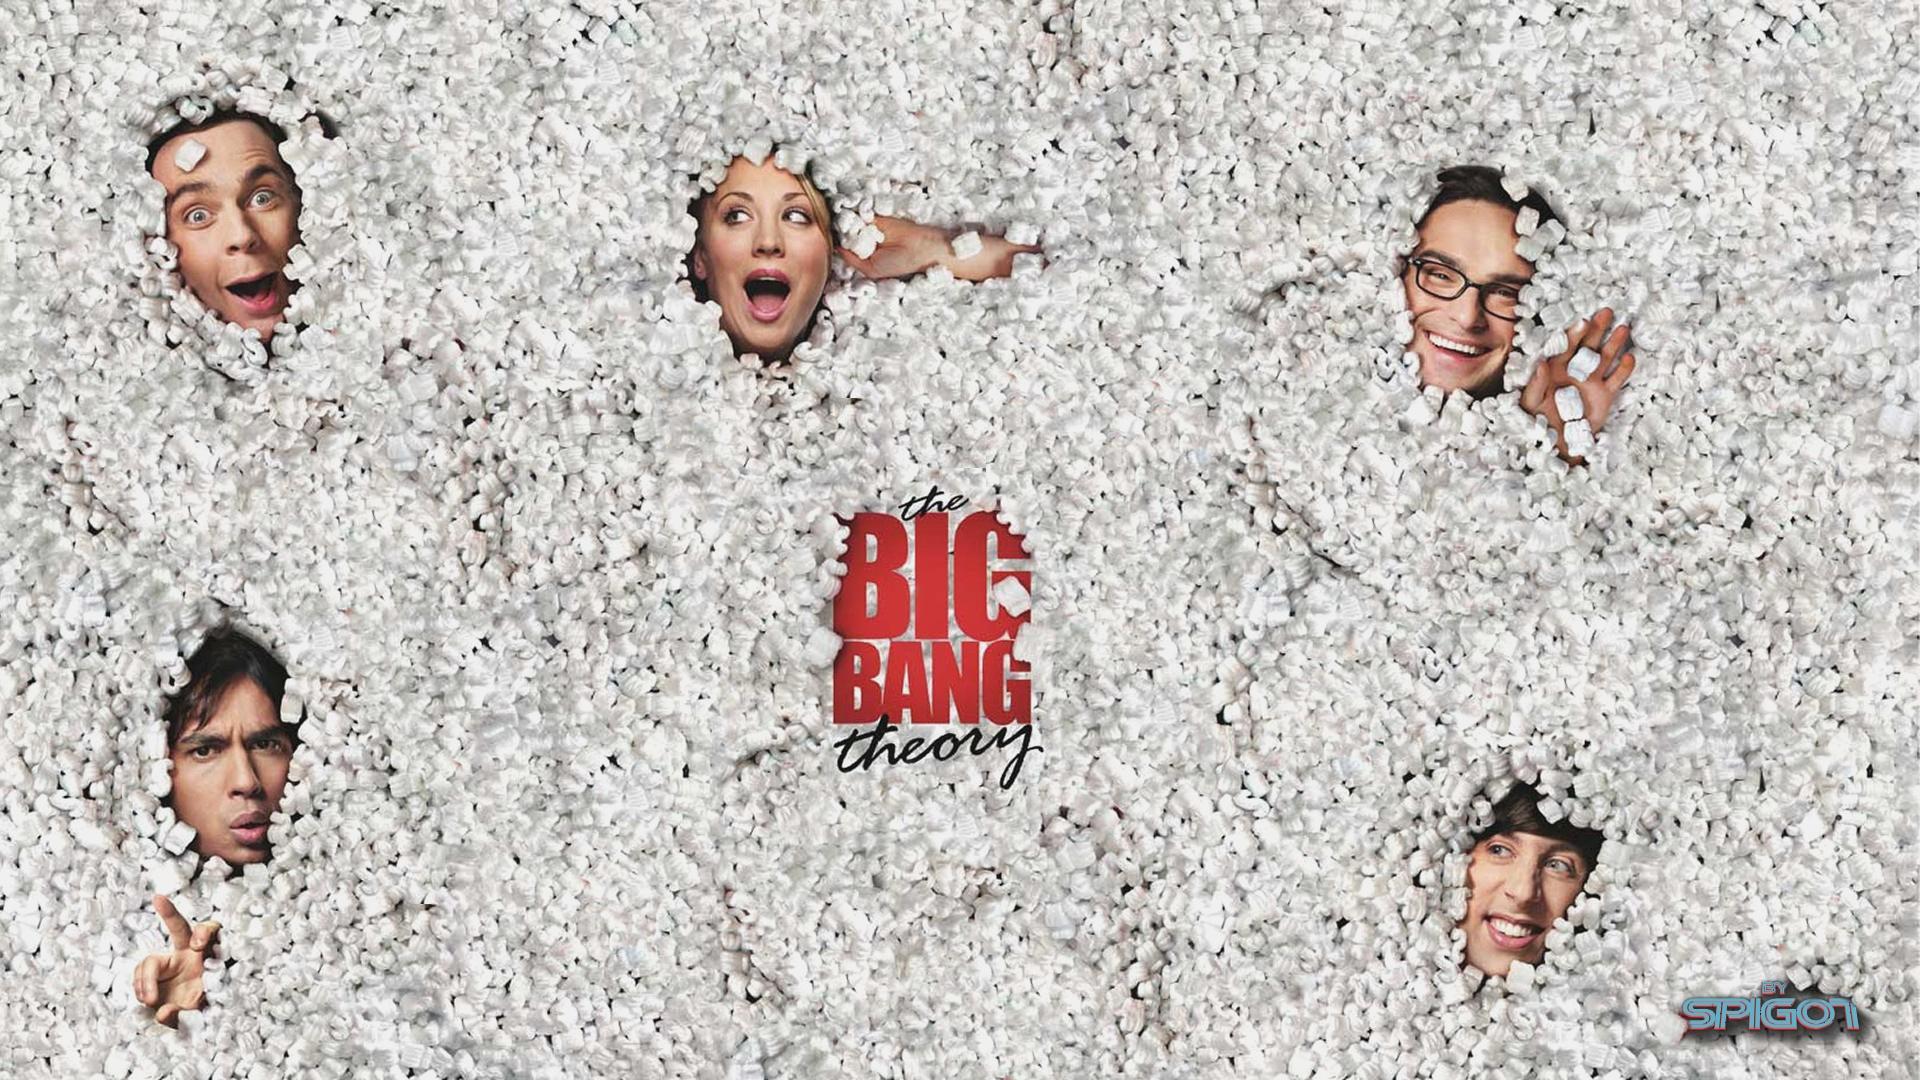 The Big Bang theory HD Wallpaper